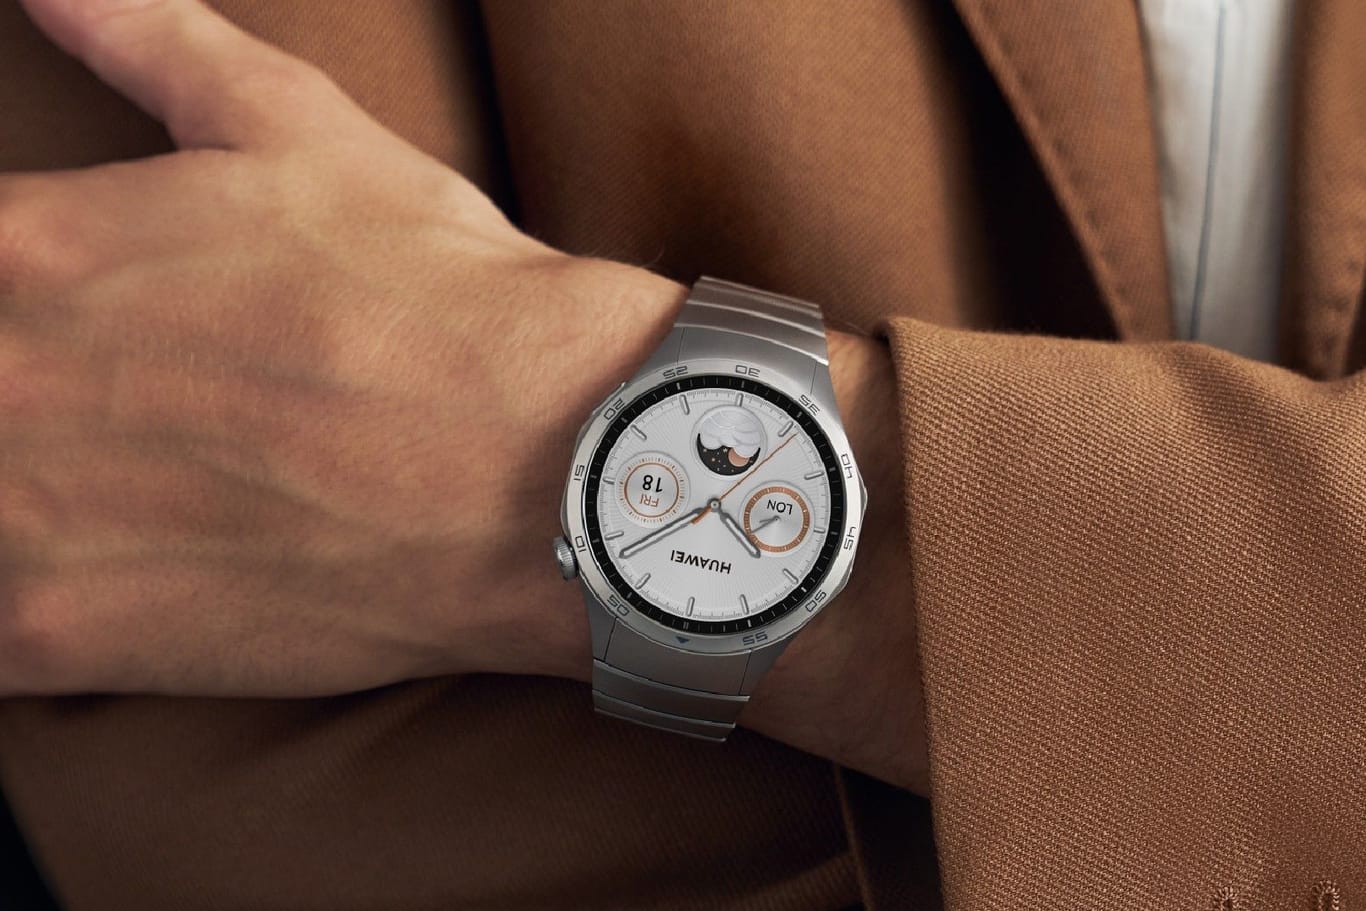 Watch GT 4 von Huawei: Die Smartwatch gibt es ab heute mit einer Sonderaktion im Angebot.